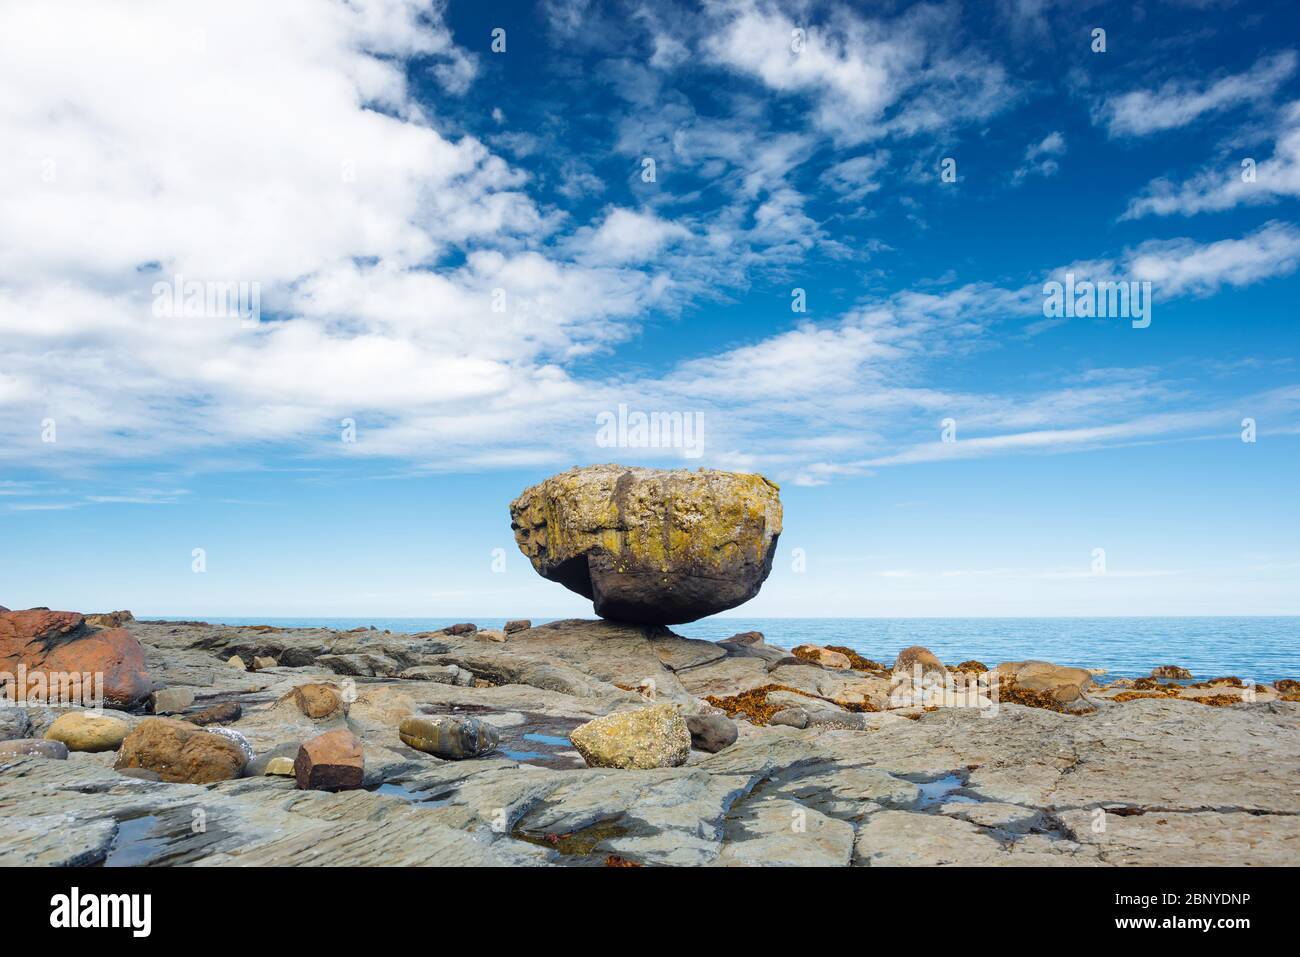 Balance Rock, a popular tourist destination in Haida Gwaii, British Columbia, Canada Stock Photo